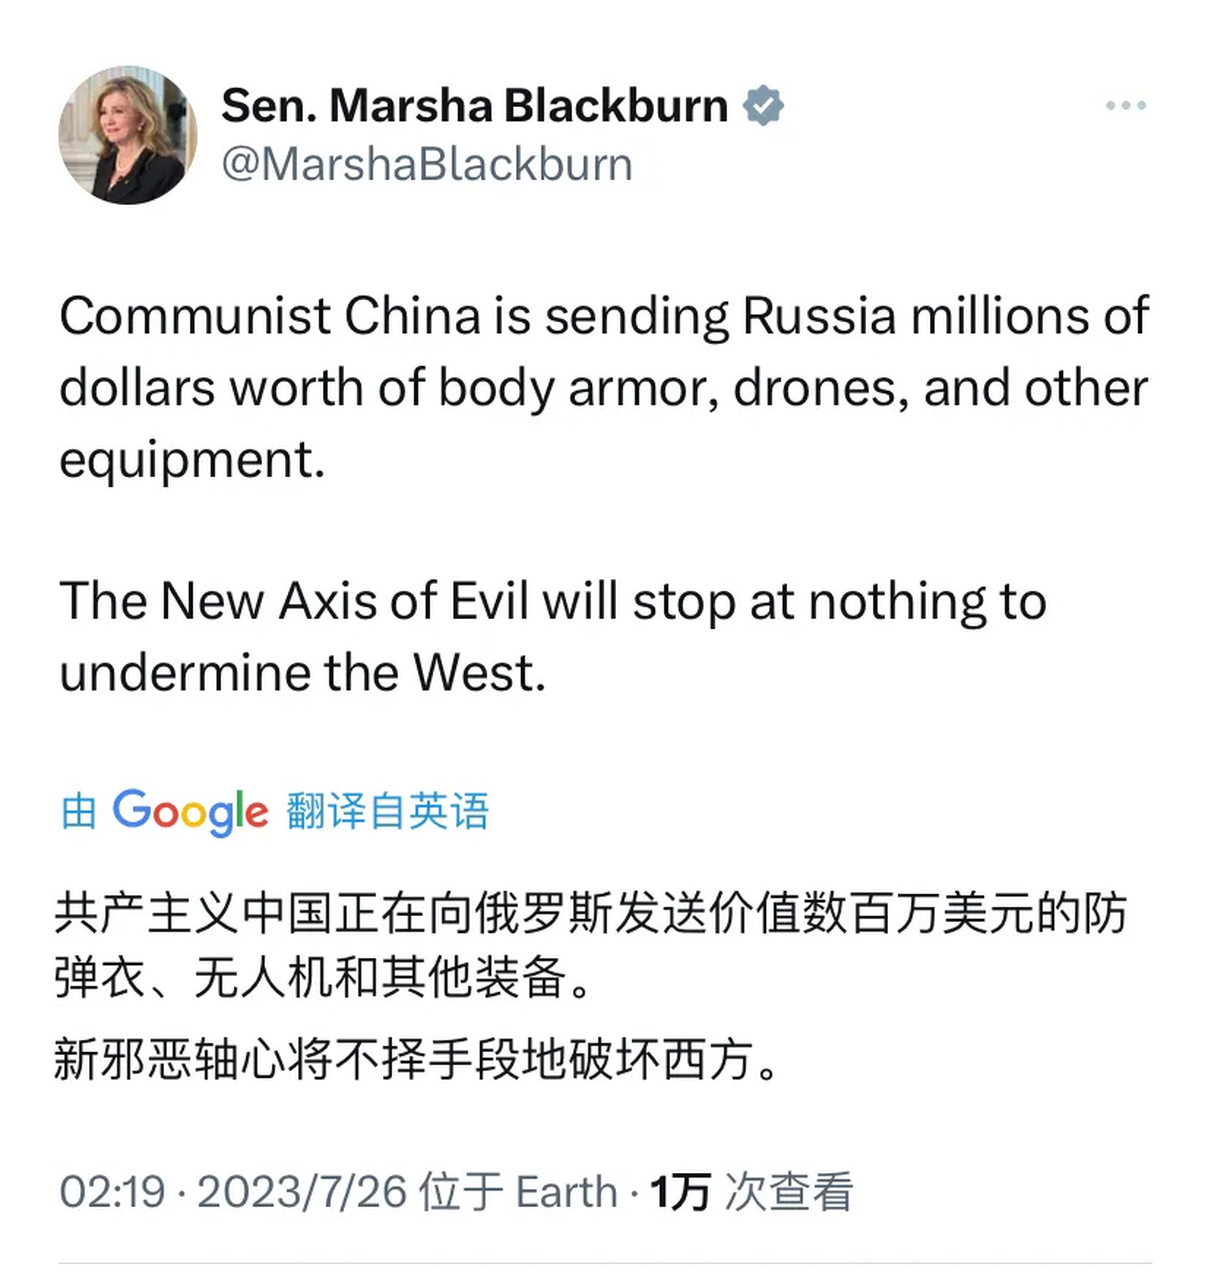 瞧瞧这位玛莎·布莱克本,今天又来污蔑中国了!